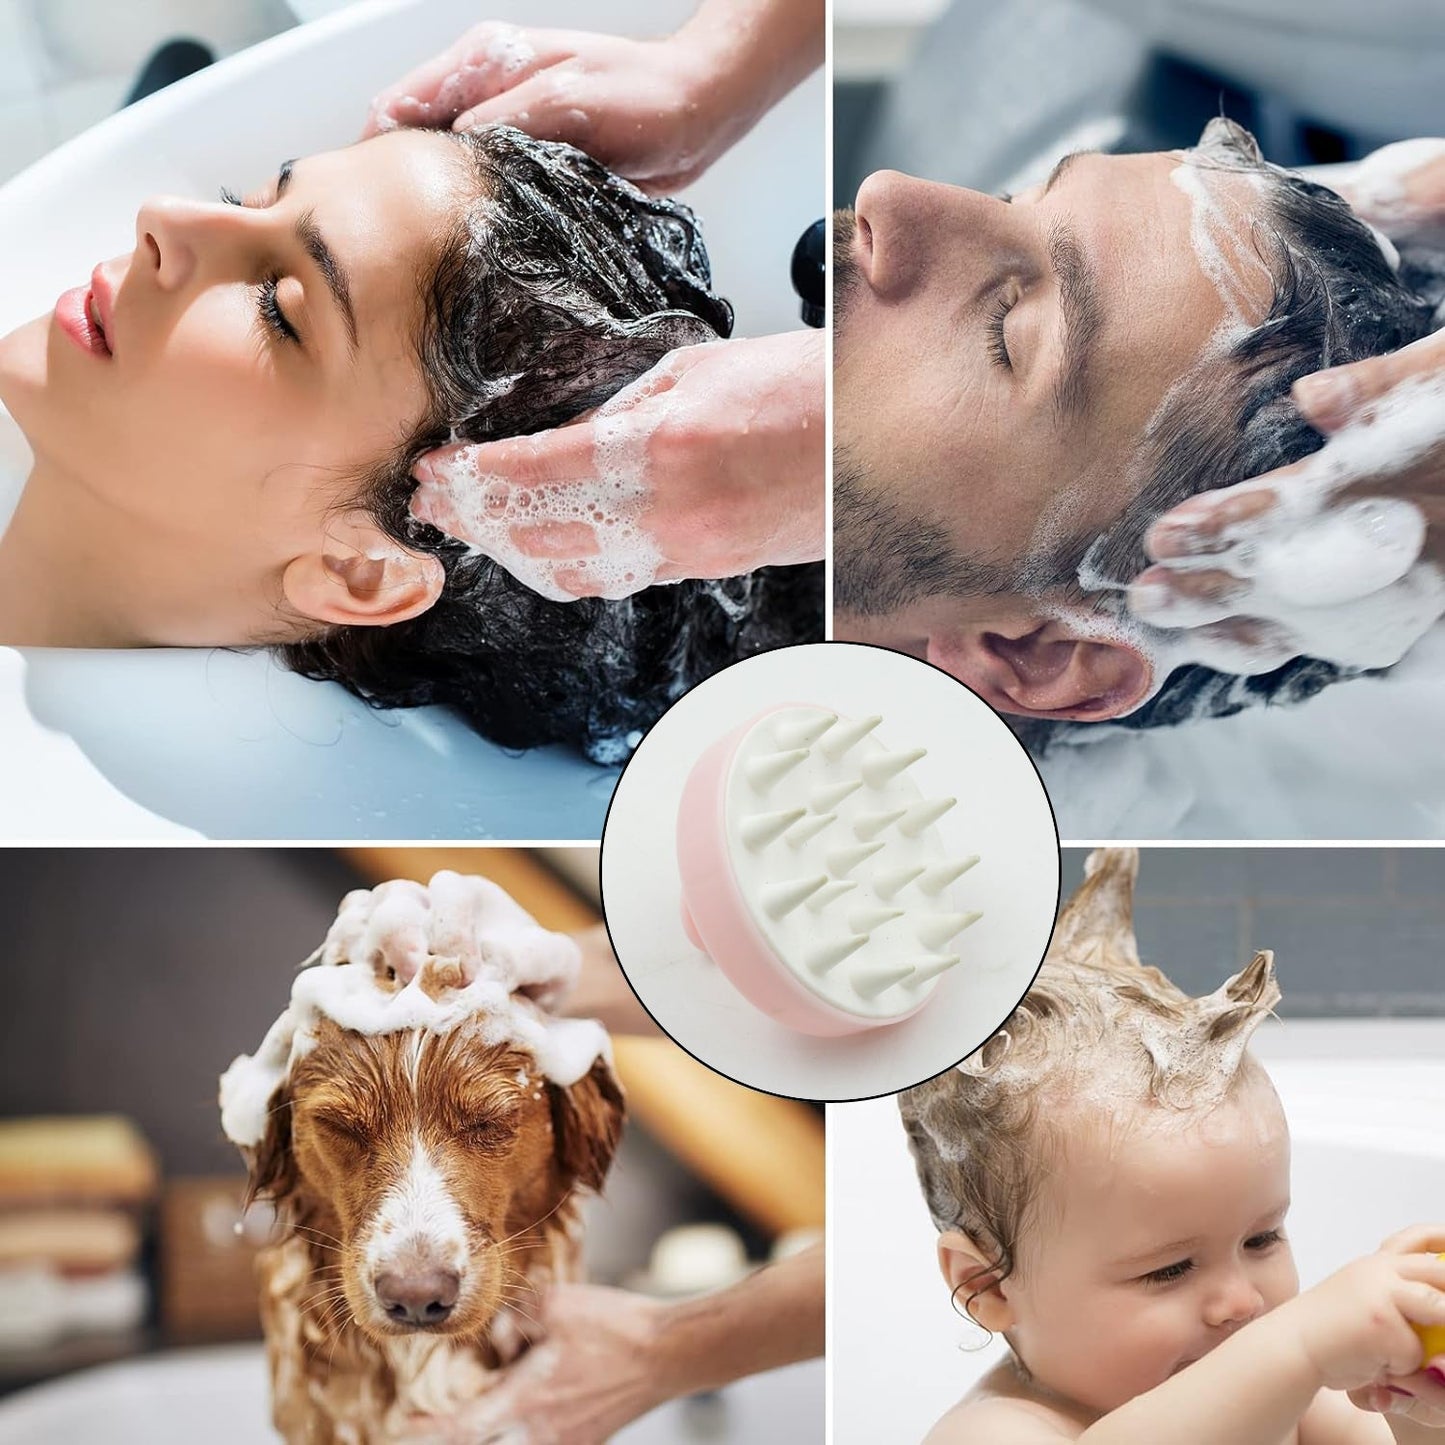 Hair Scalp Massager Shampoo Brush, Scalp Care Hair Wash Brush Silicone Comb, Shampoo Brush (1 Pc)